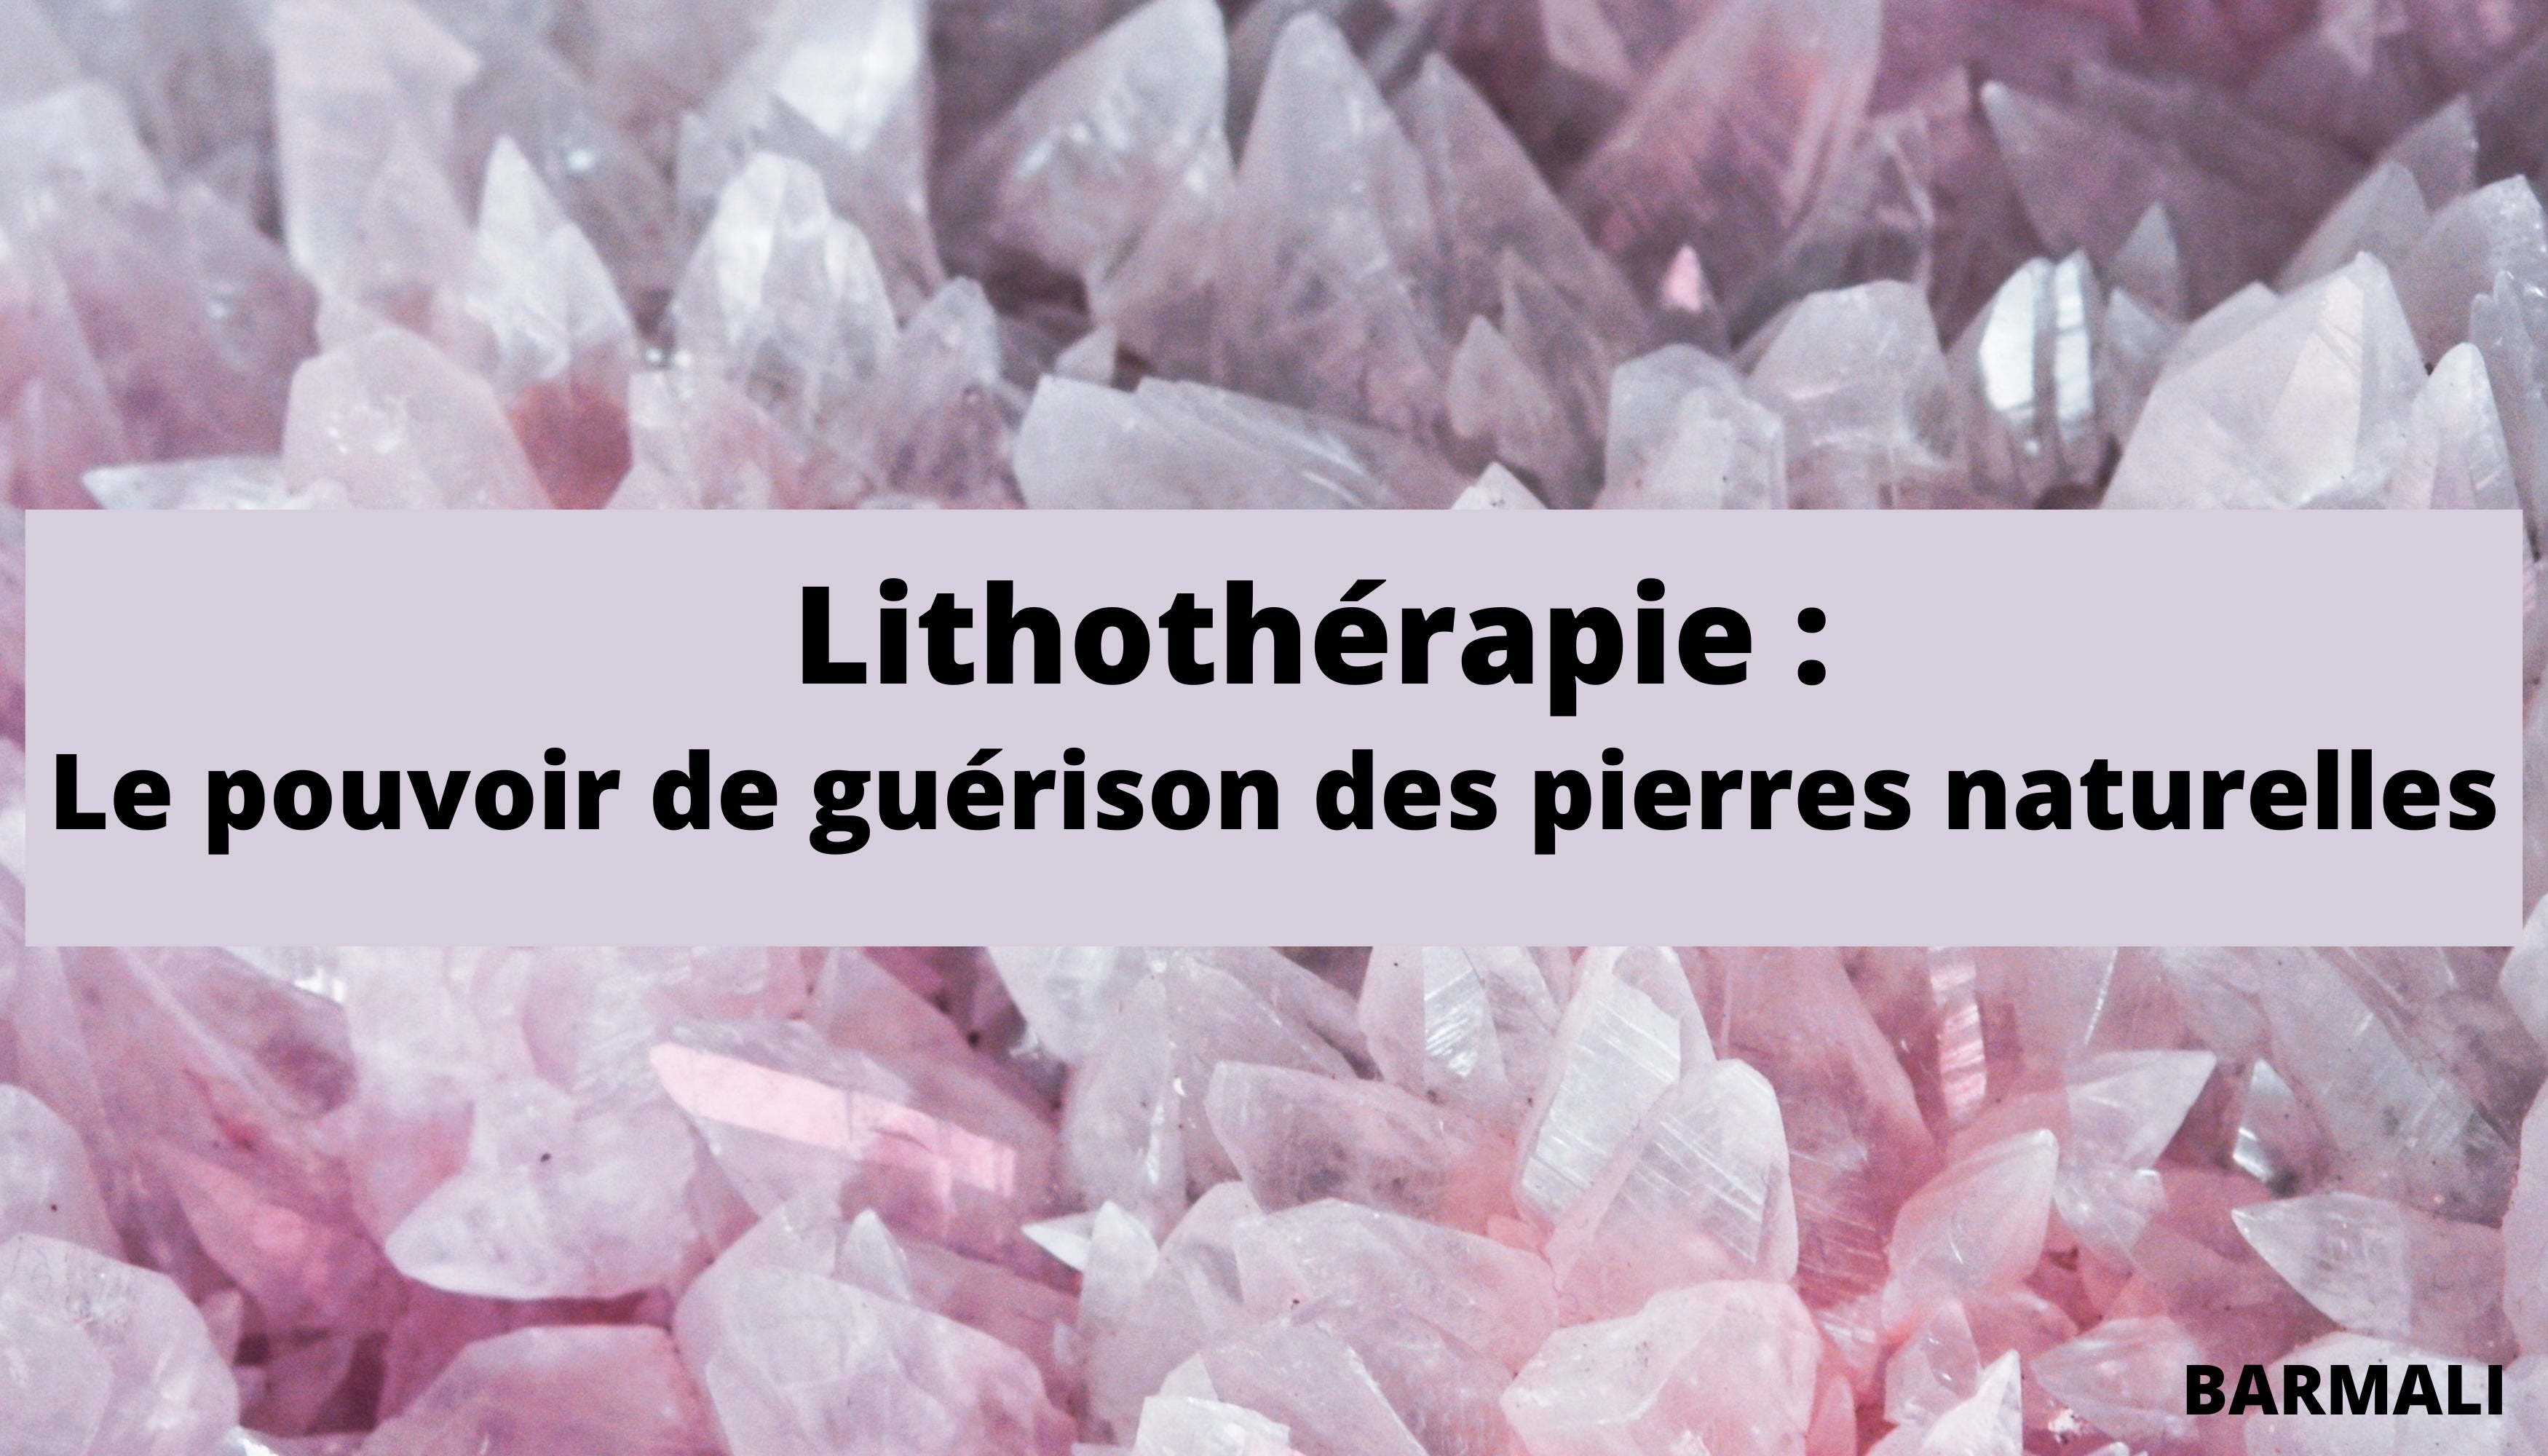 Lithothérapie, le pouvoir des pierres et cristaux